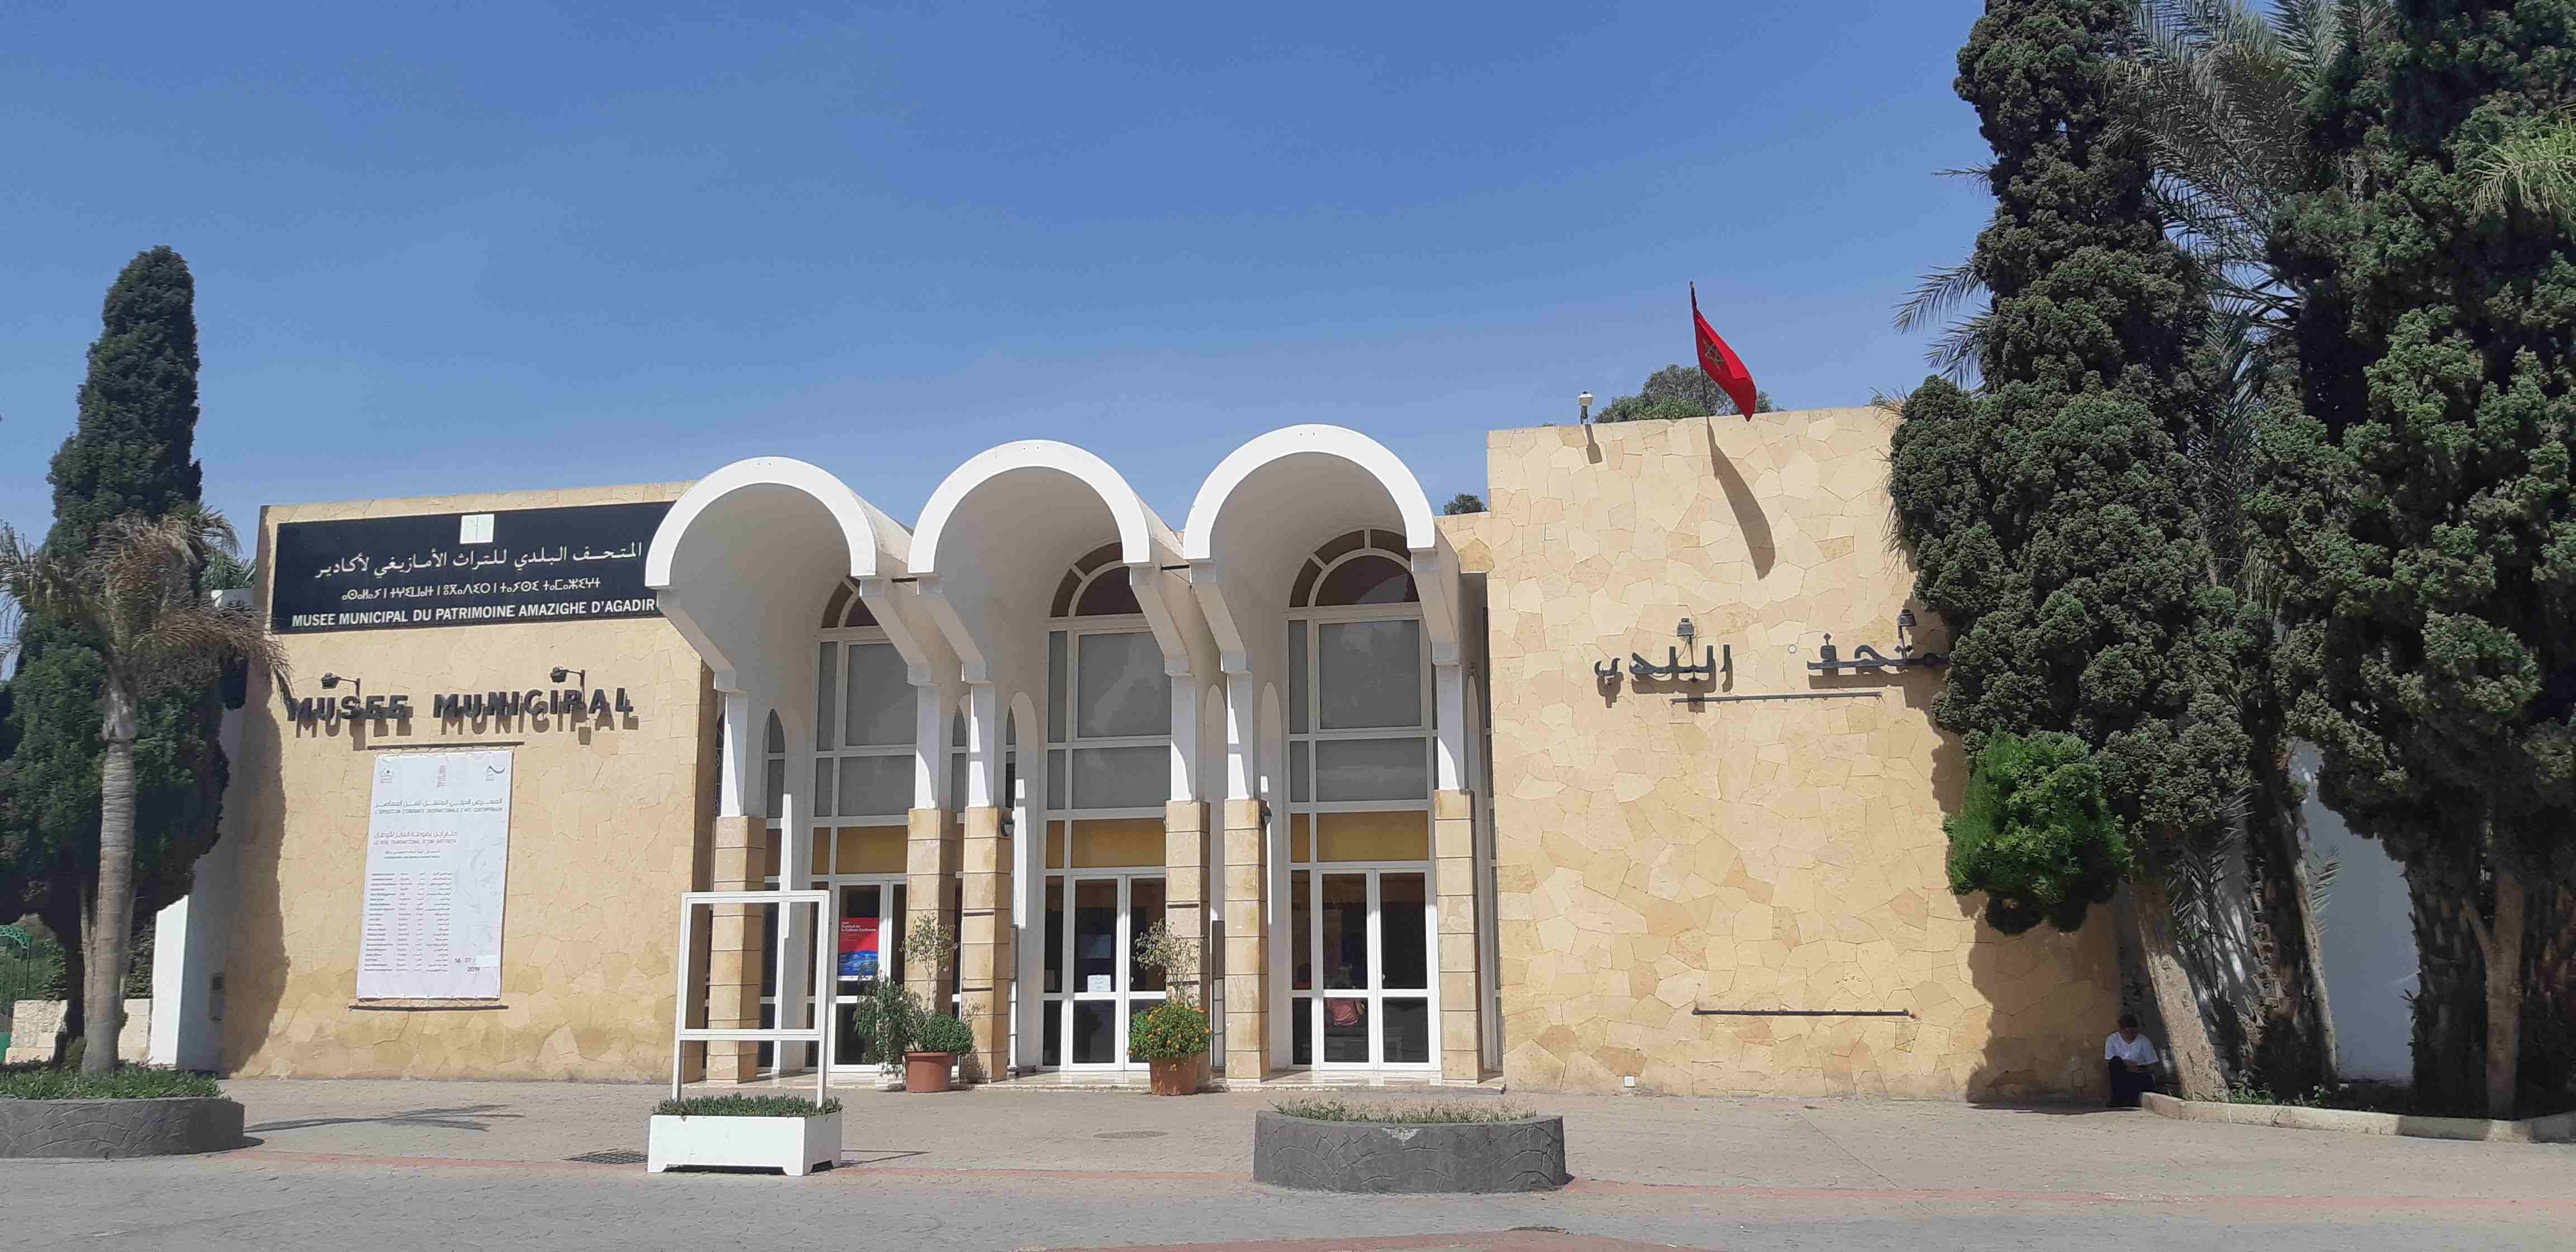 Blog Musée de patrimoine Amazigh